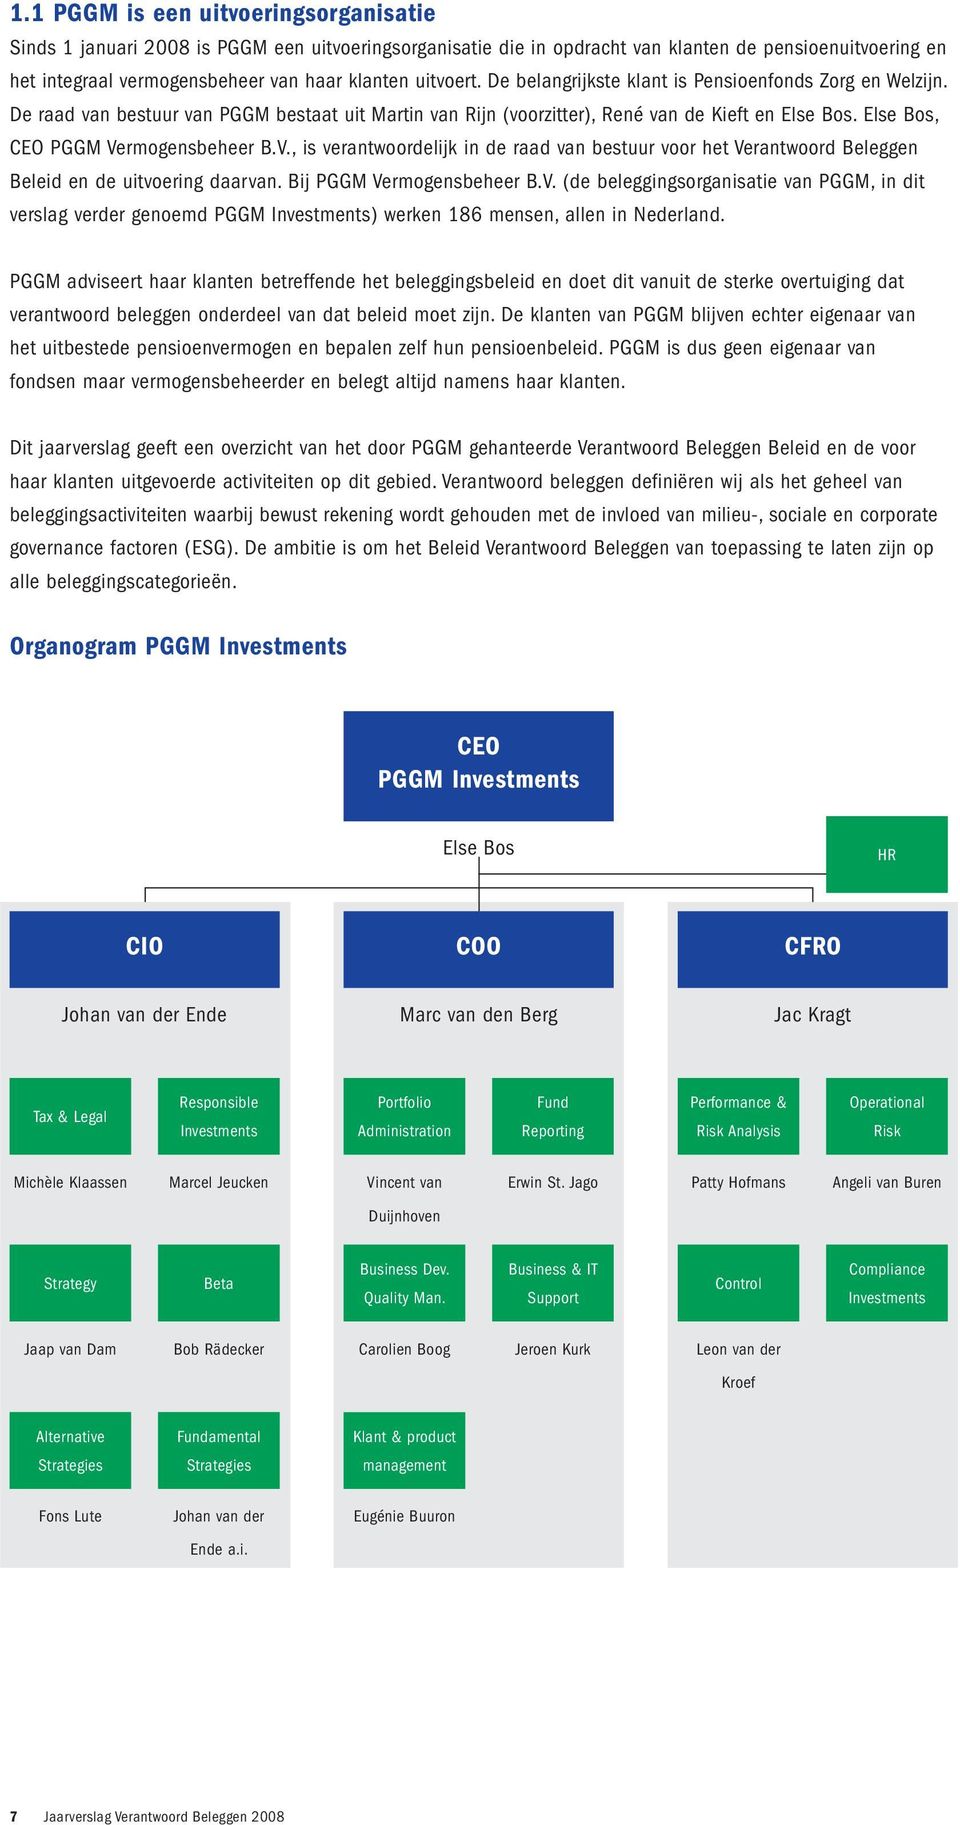 Else Bos, CEO PGGM Vermogensbeheer B.V., is verantwoordelijk in de raad van bestuur voor het Verantwoord Beleggen Beleid en de uitvoering daarvan. Bij PGGM Vermogensbeheer B.V. (de beleggingsorganisatie van PGGM, in dit verslag verder genoemd PGGM Investments) werken 186 mensen, allen in Nederland.